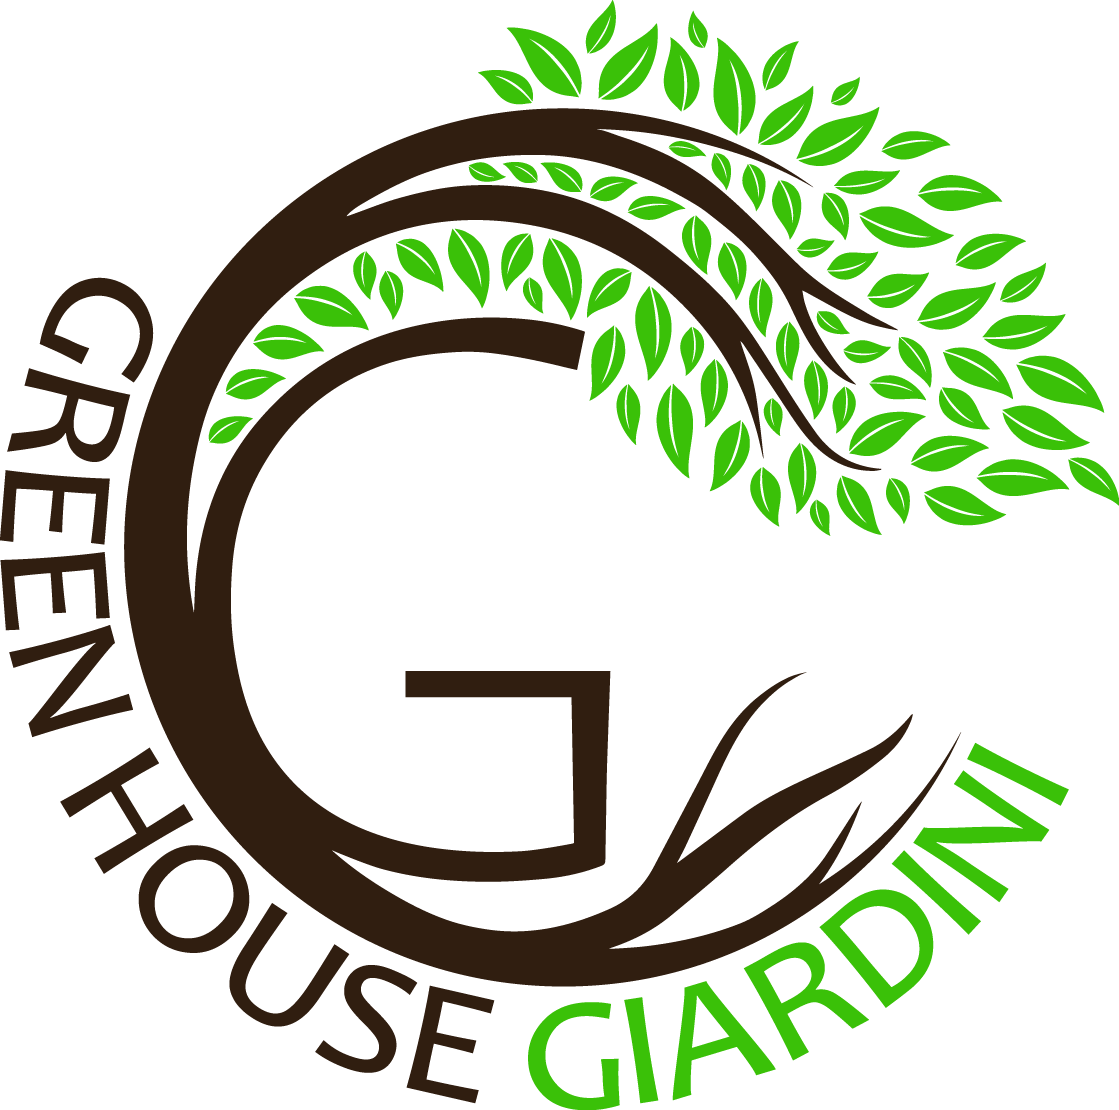 Greenhouse giardini srl_saporiti stefano _giardinieri varese, milano e provincia